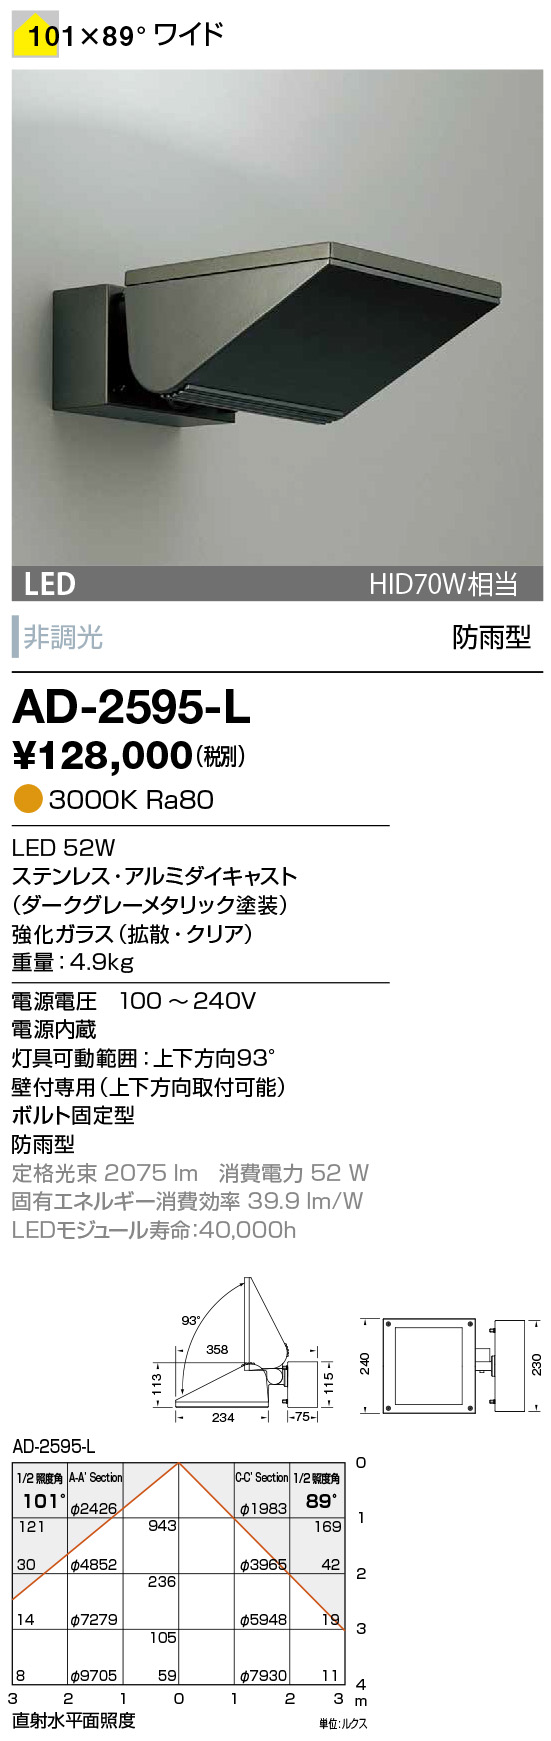 山田照明 AD-3255-L 山田照明 軒下用シーリングライト 黒 LED 電球色 調光 広角 屋外照明